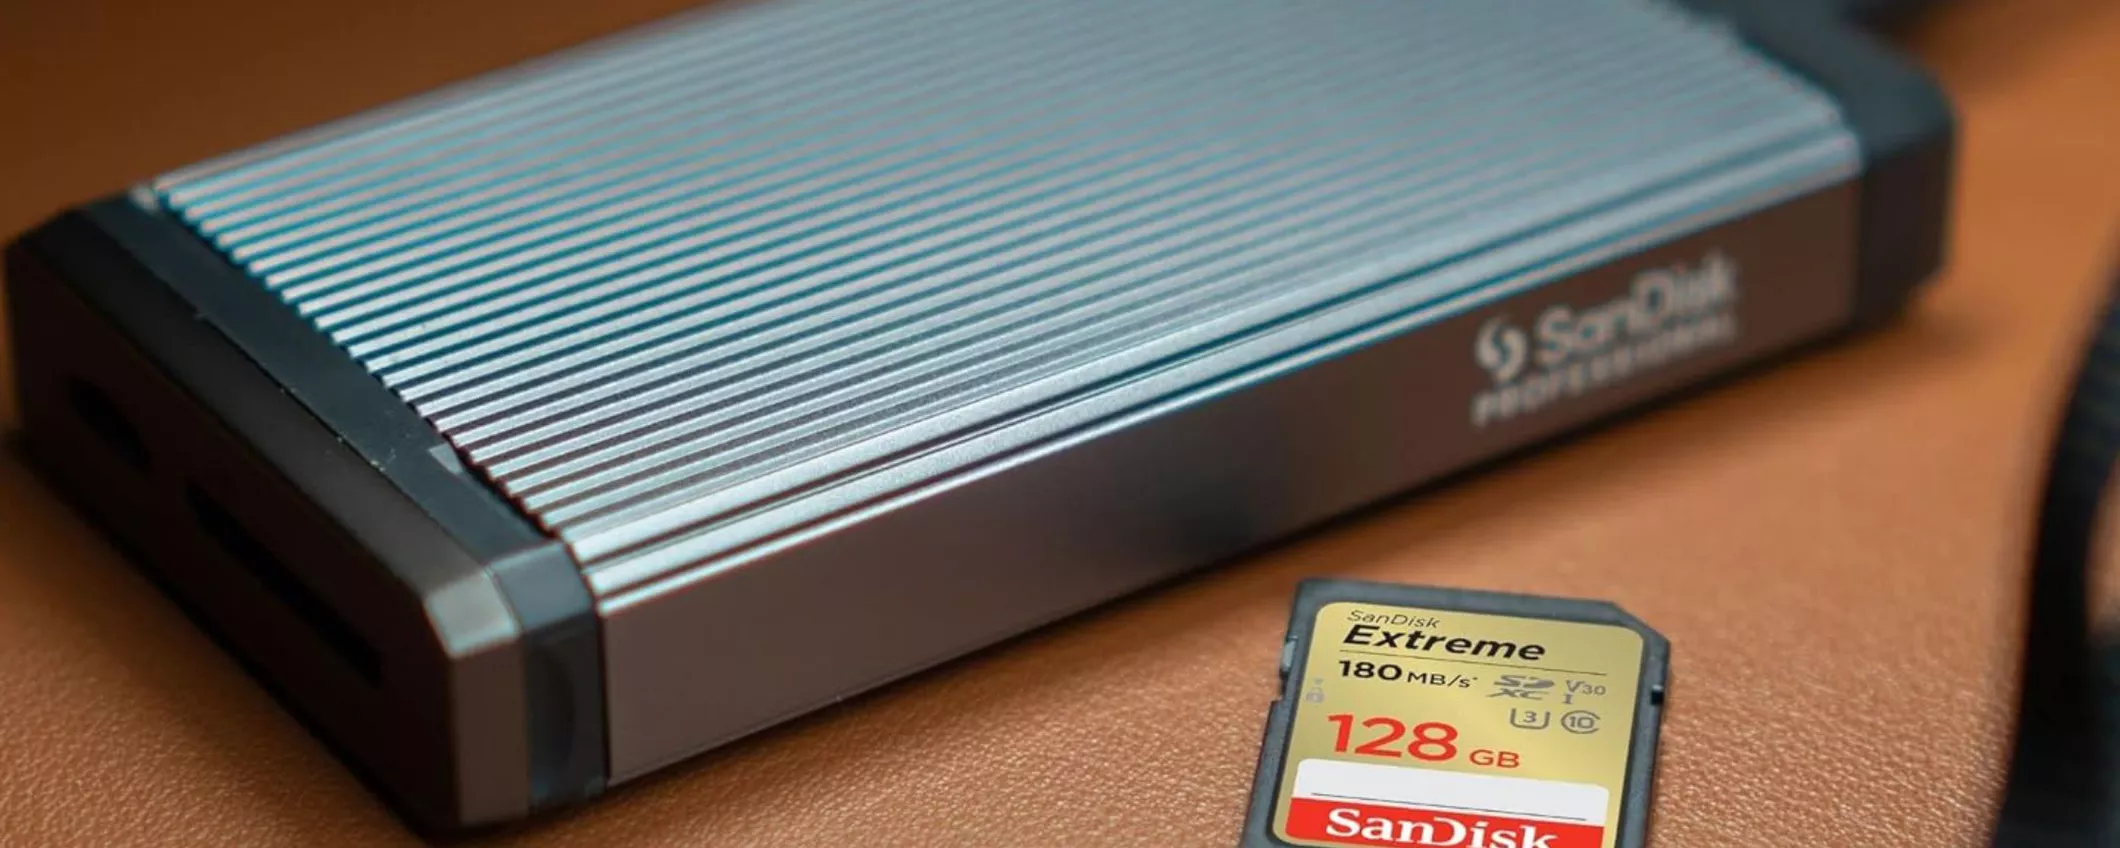 SanDisk 128GB Extreme: Spazio e Velocità per le Tue Avventure a un Prezzo Incredibile!